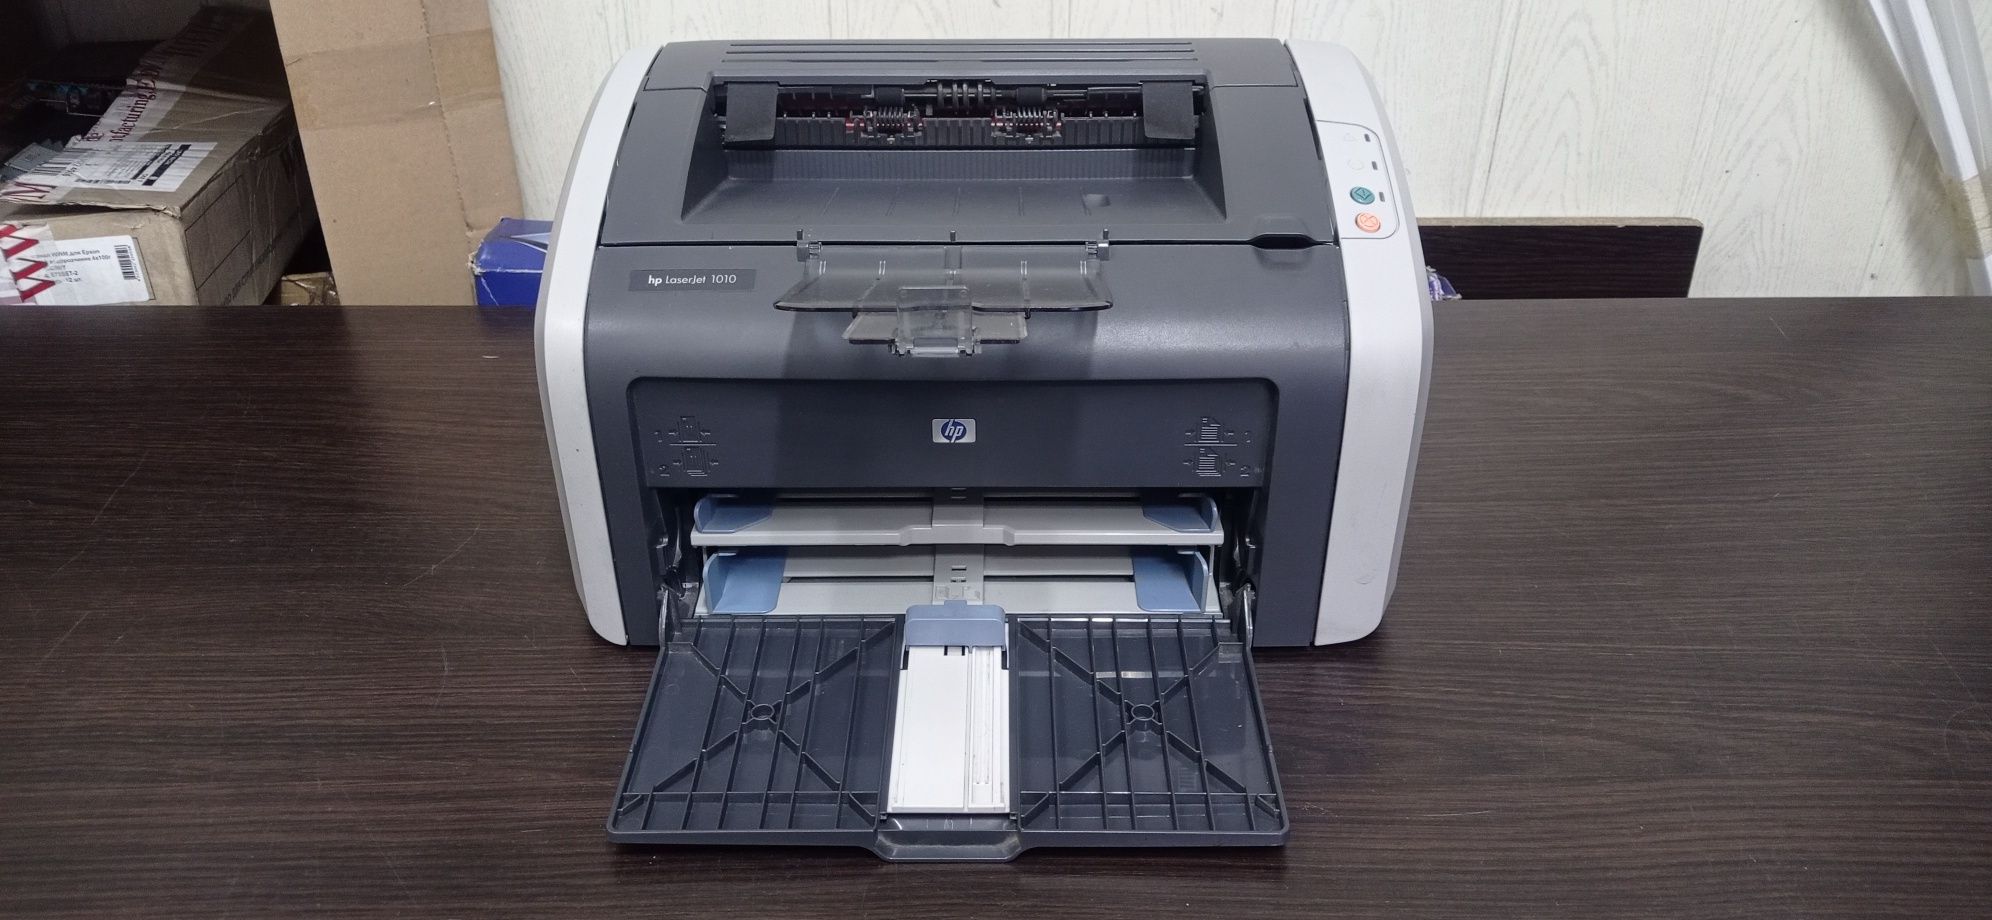 Принтер лазерный  Hp 1010